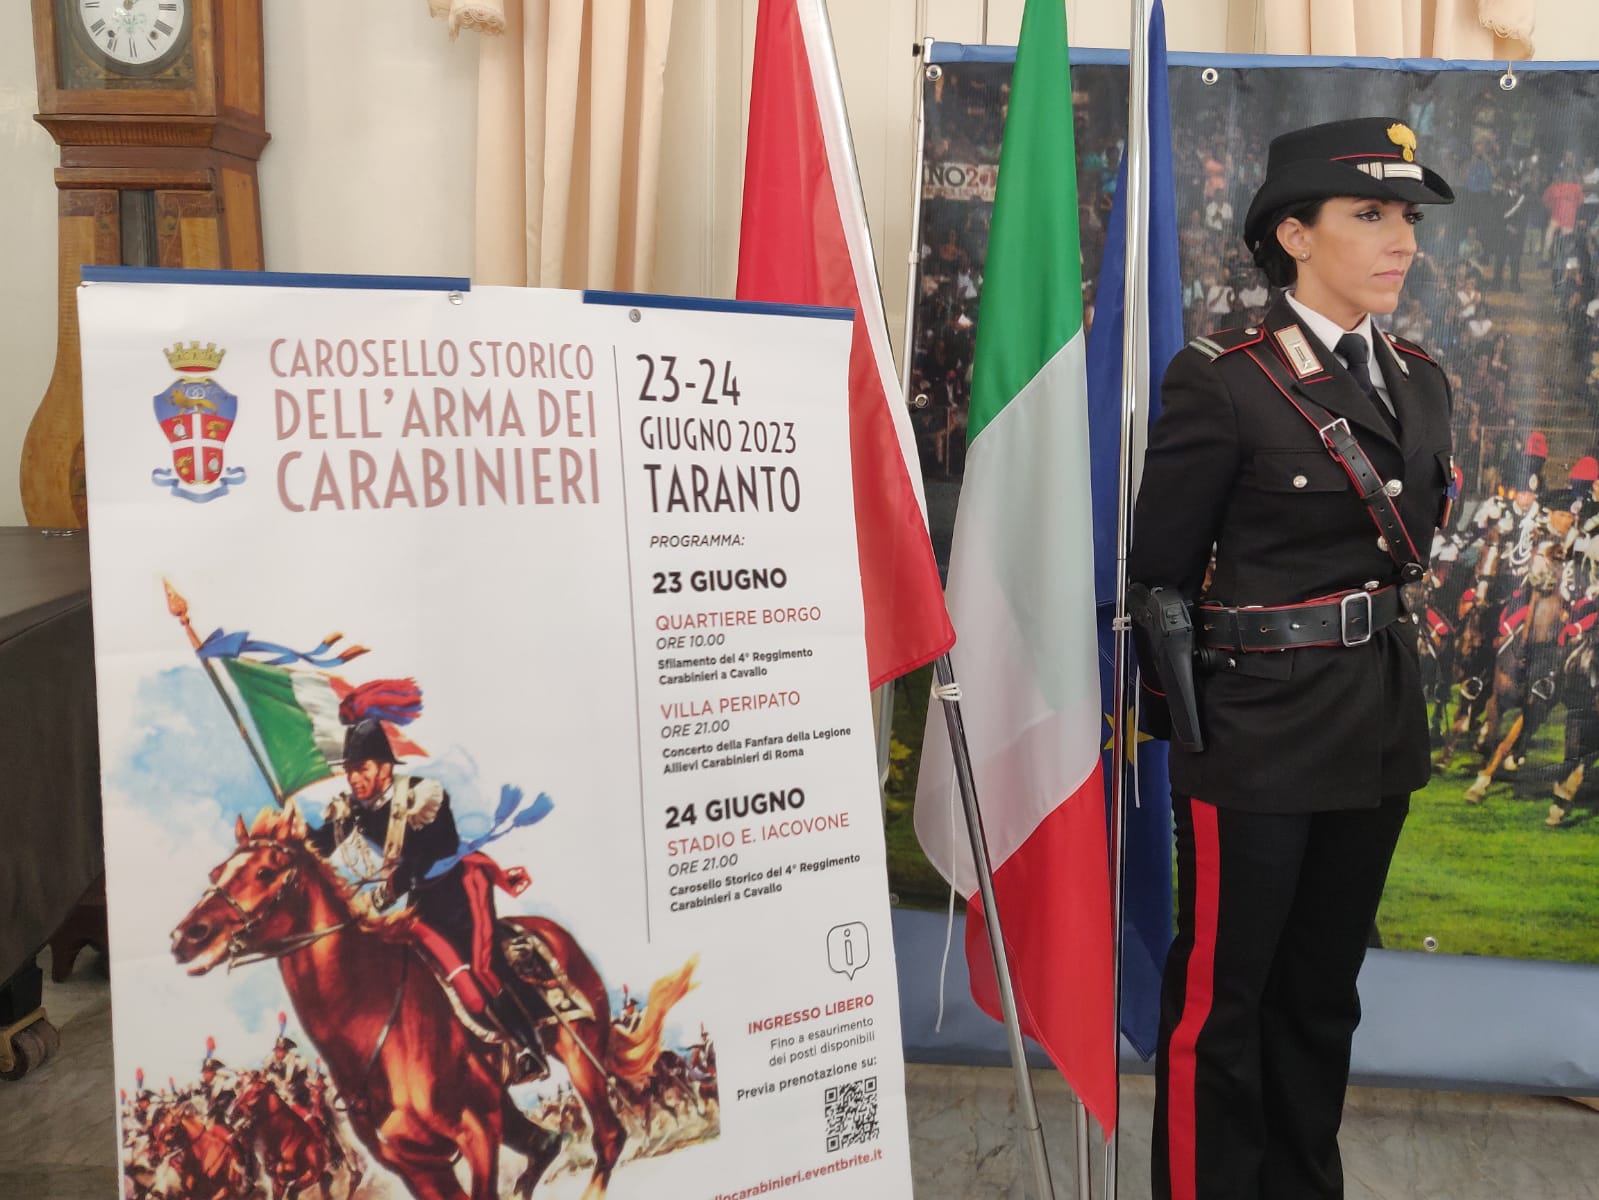 “Carosello Storico dell’Arma dei Carabinieri”, il 24 giugno lo spettacolo dei militari a cavallo